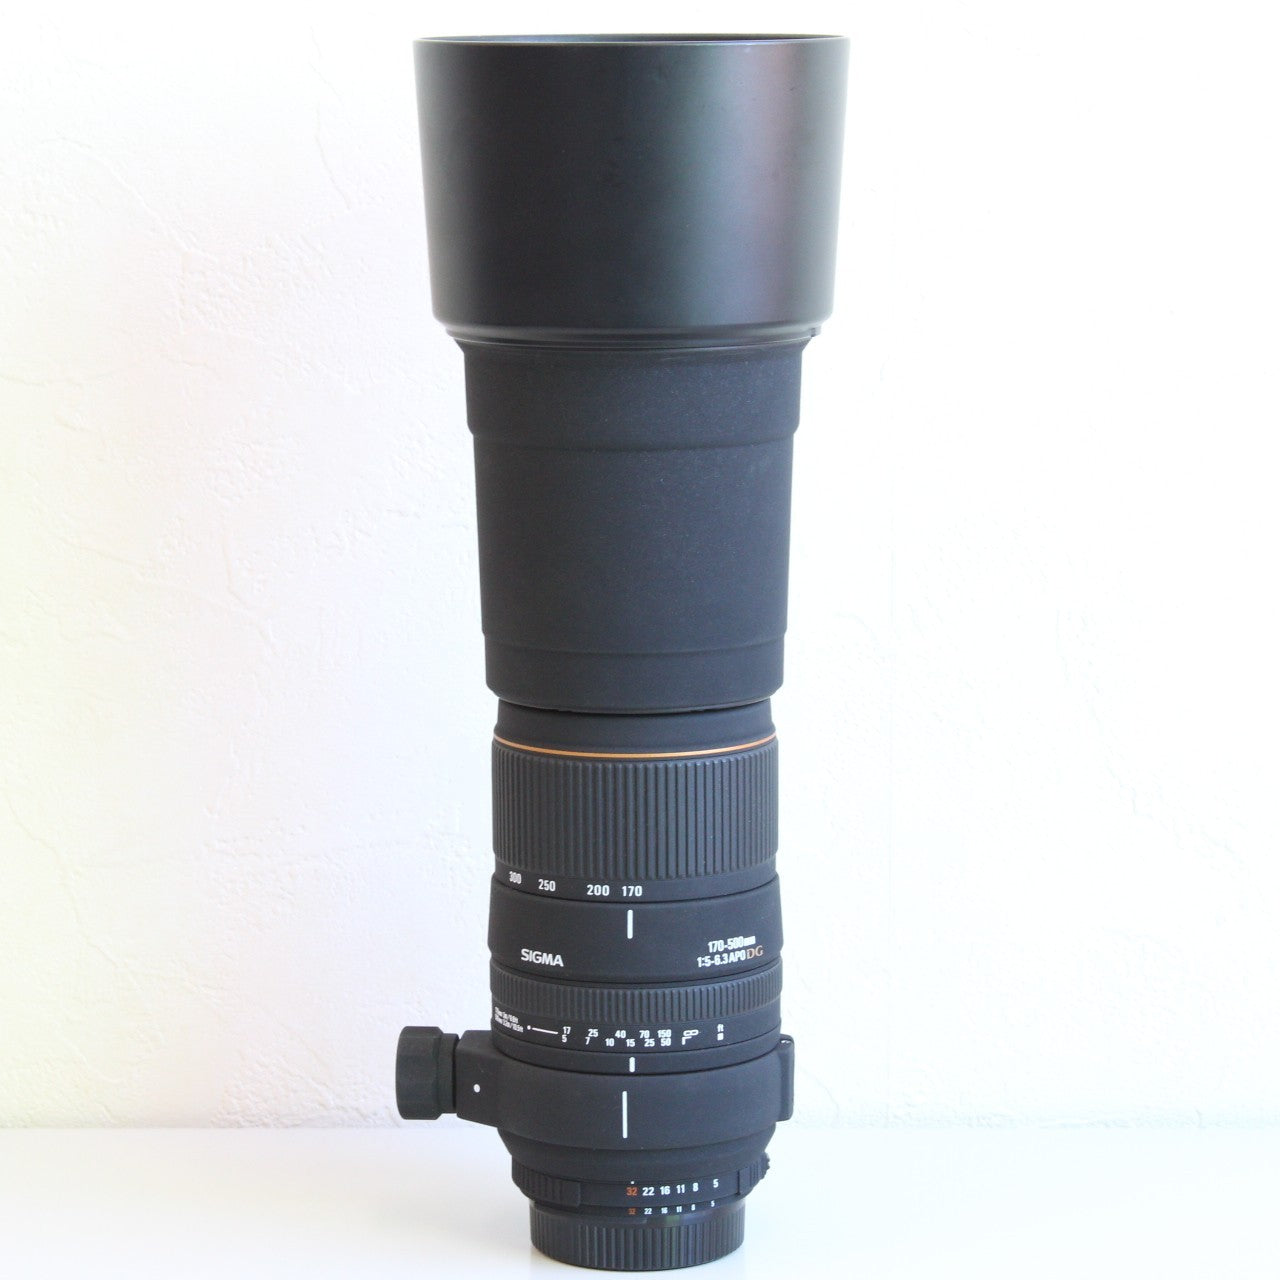 SIGMA APO 170-500mm 1:5-6.3 D カメラ レンズ ニコン用 シグマ 